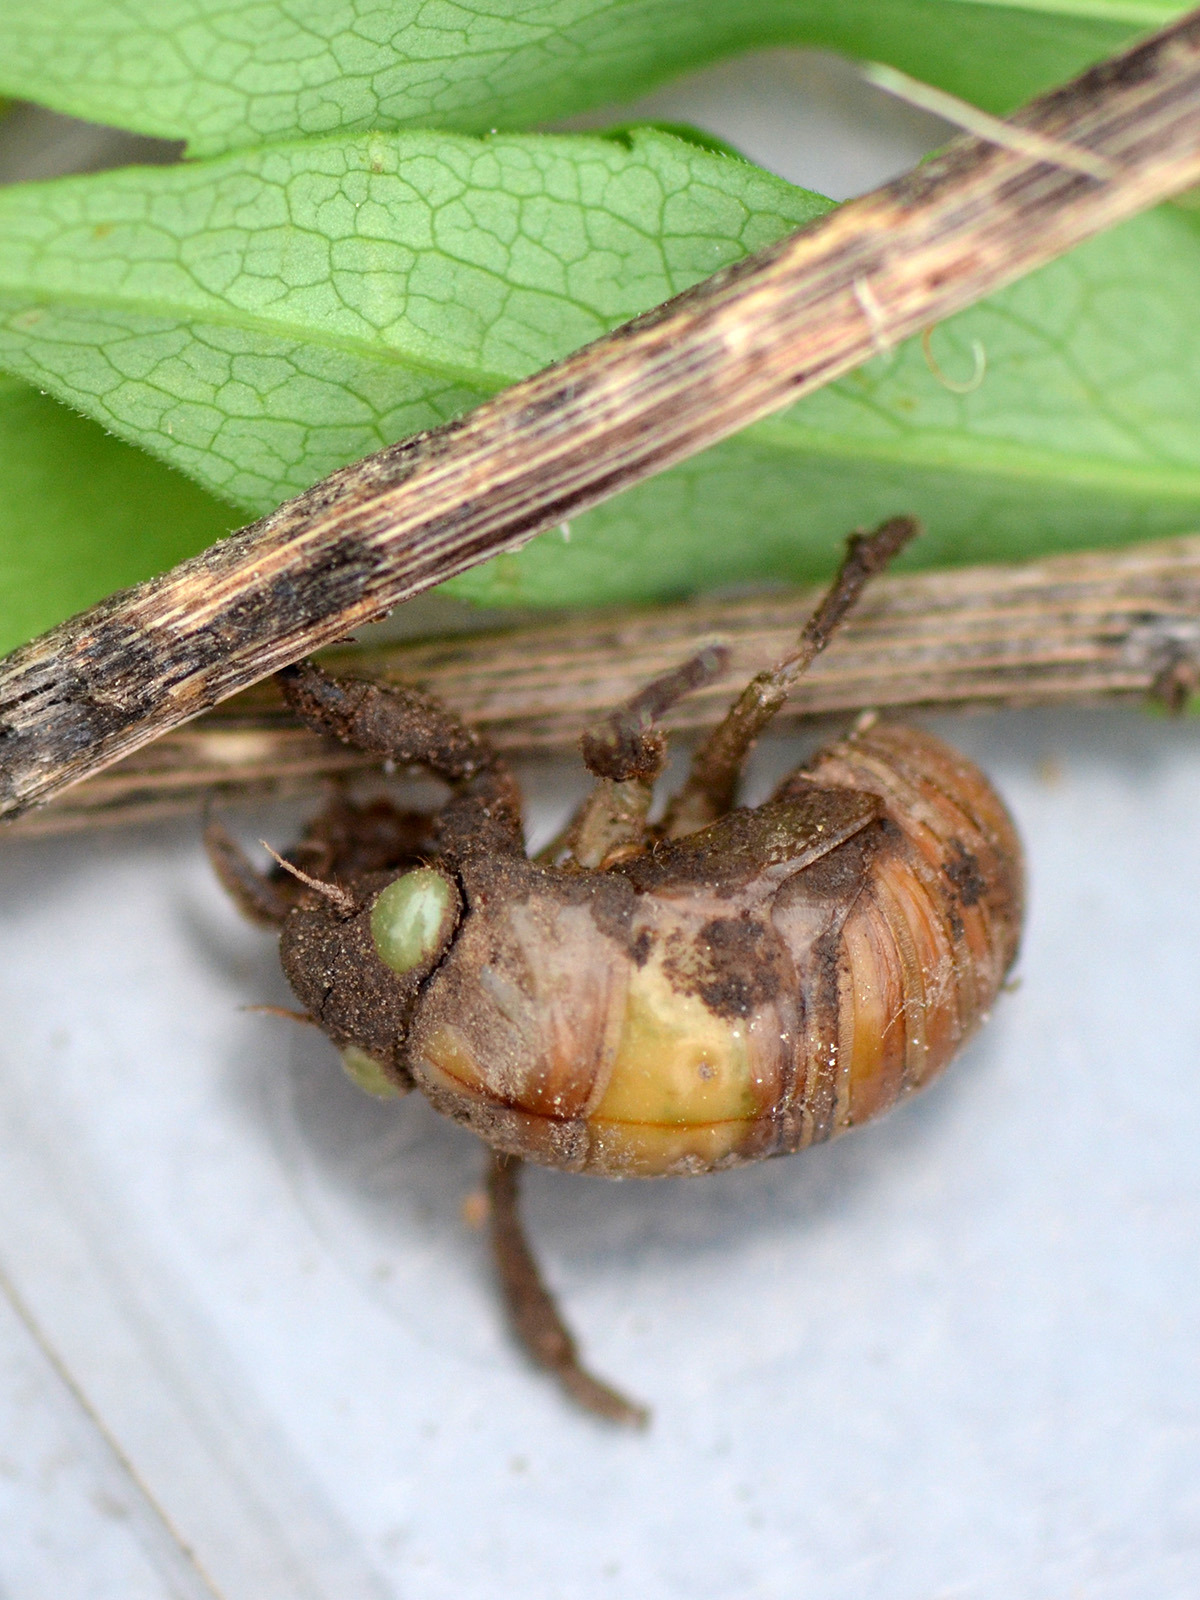 Cicada larva